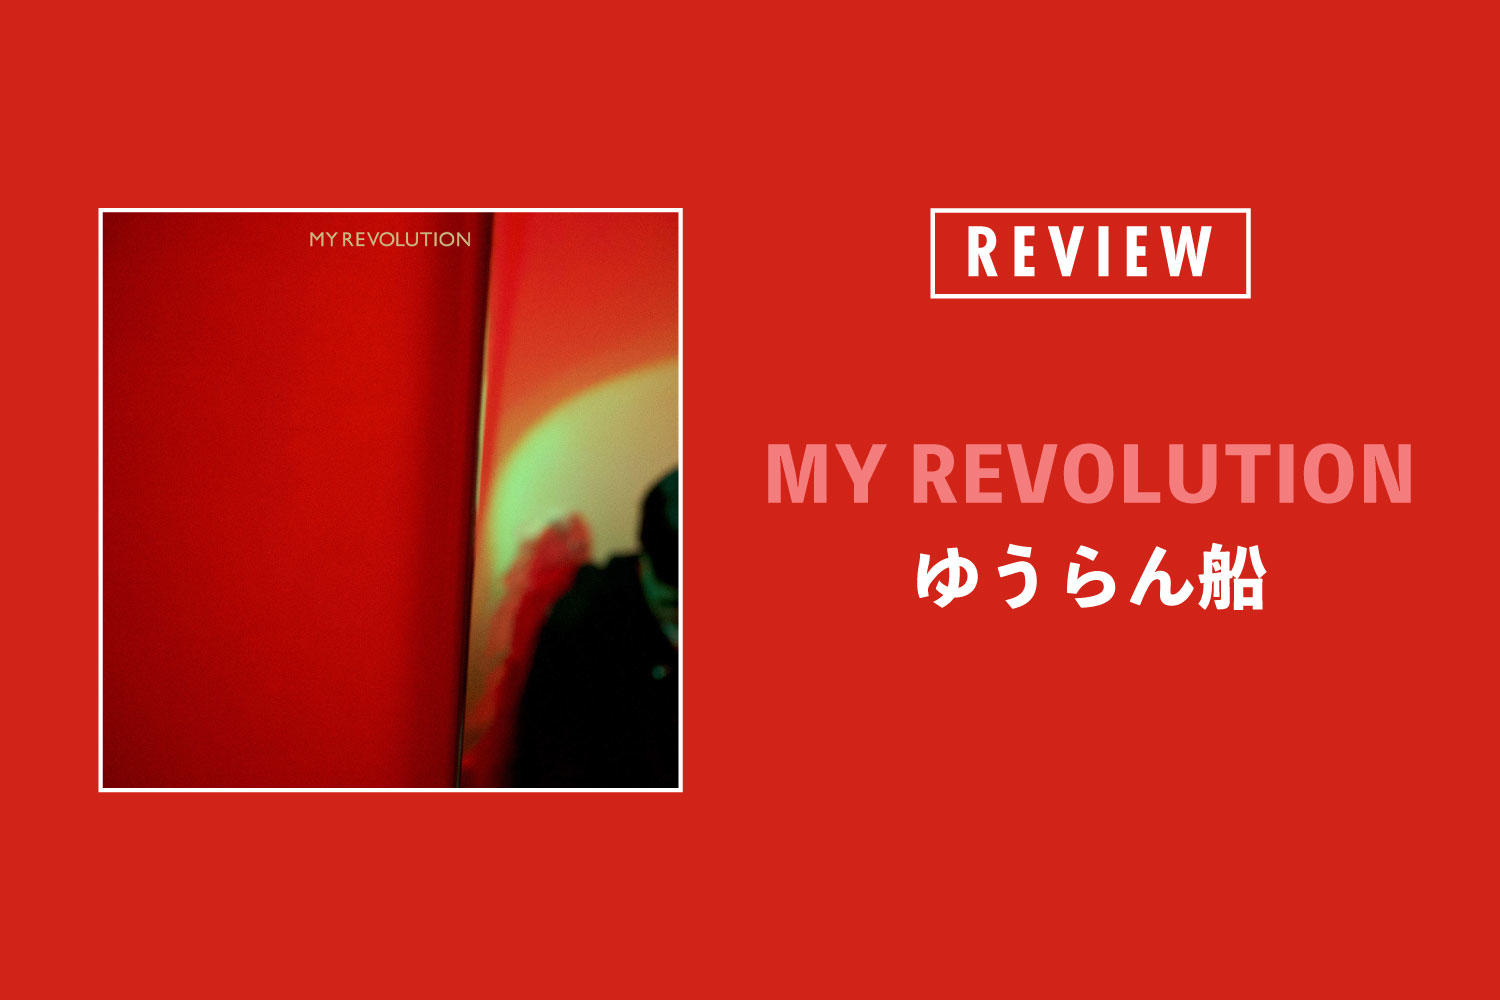 ゆうらん船「MY REVOLUTION」──ポップとアヴァンギャルドの鮮やかな融合。時間旅行のようなアルバム